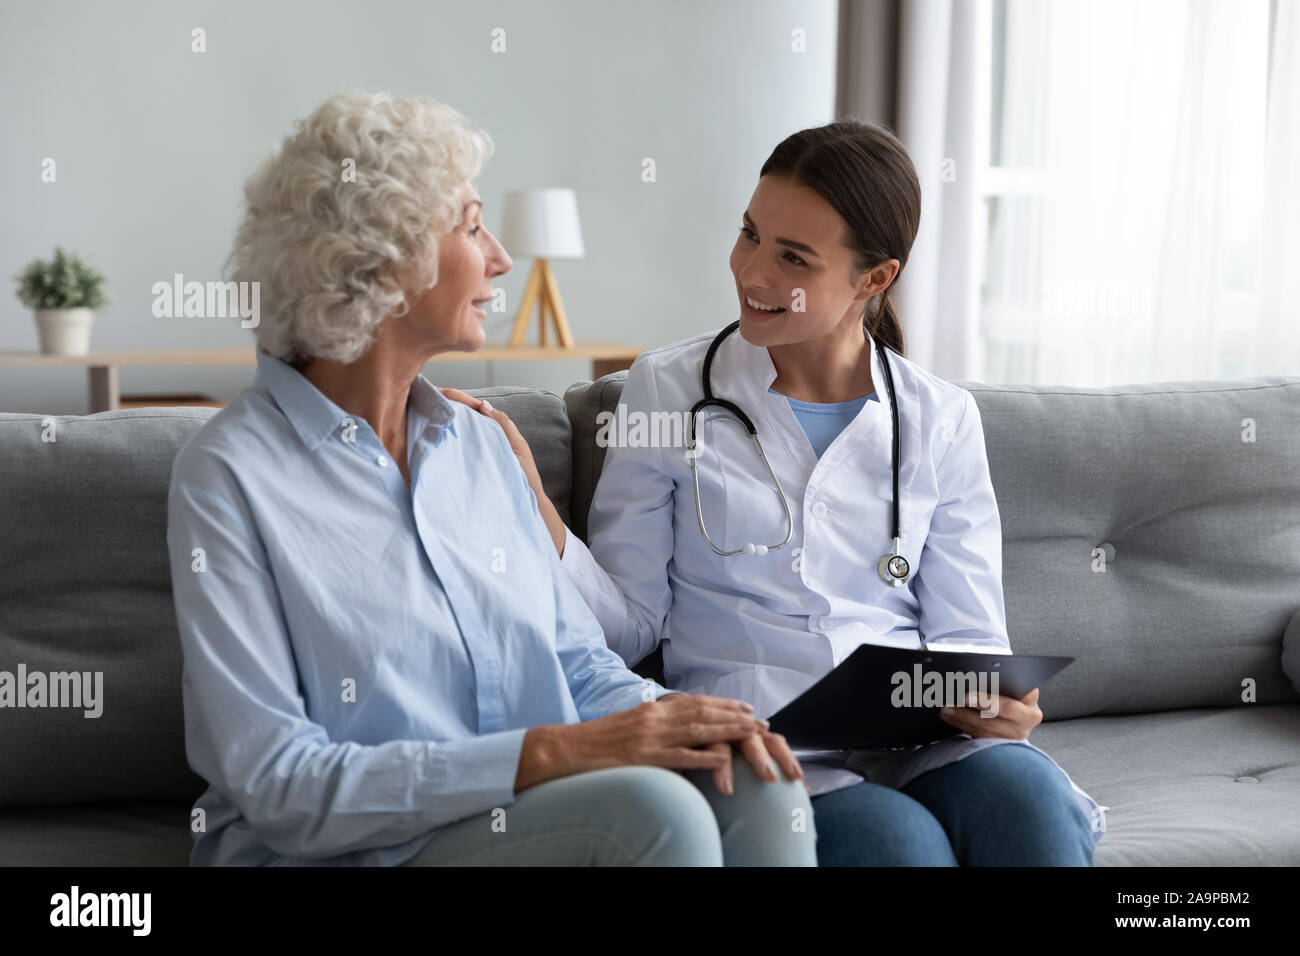 Caring giovane donna infermiera aiutando il supporto di vecchia nonna adulto paziente Foto Stock